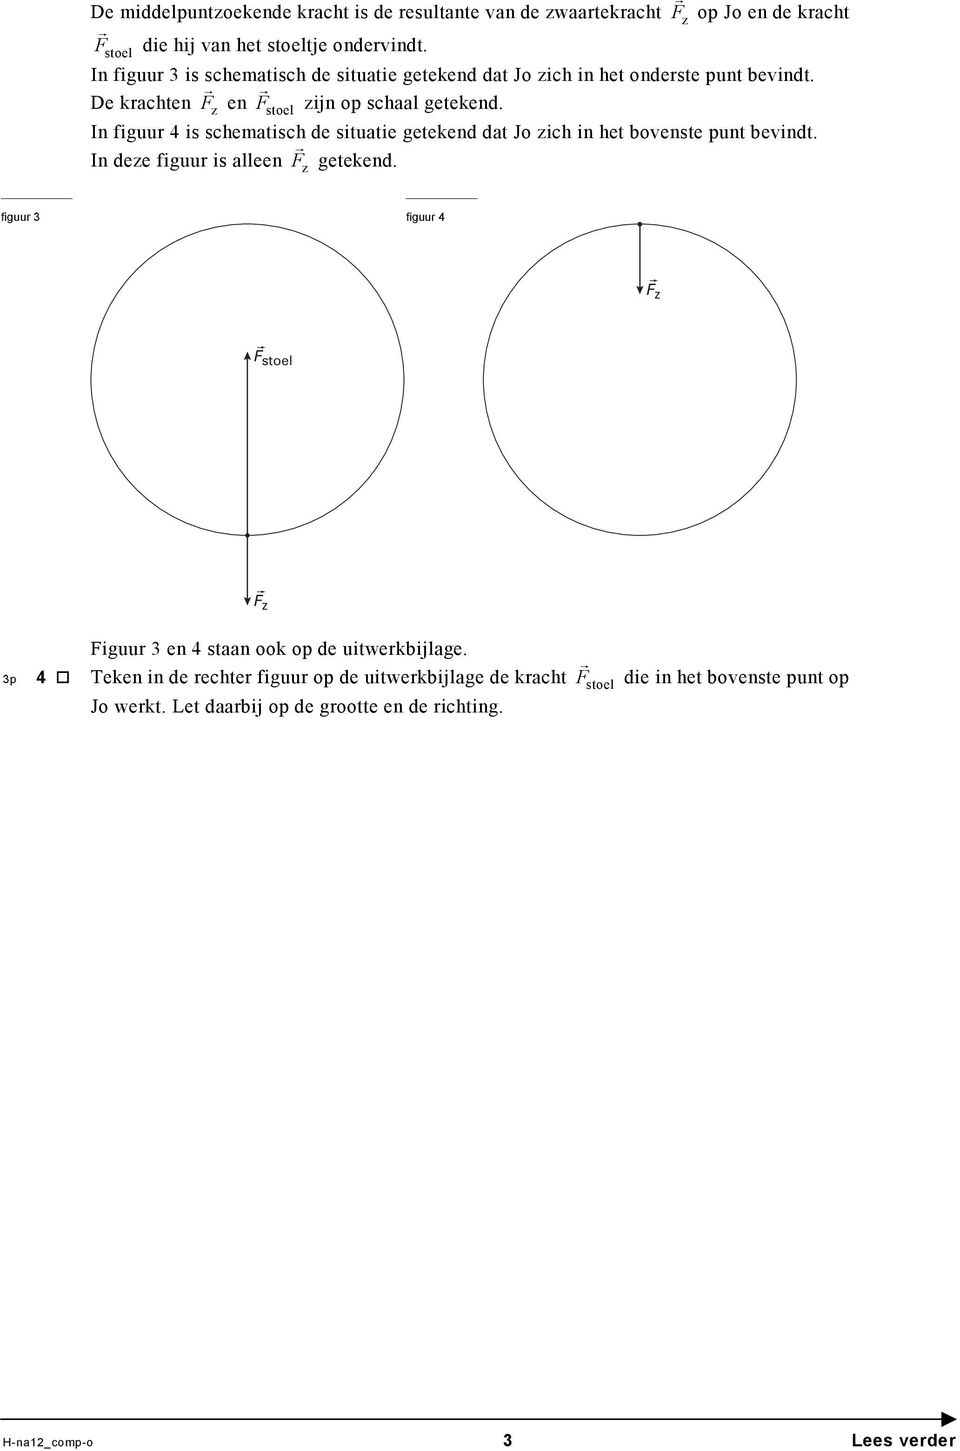 In figuur 4 is schematisch de situatie getekend dat Jo zich in het bovenste punt bevindt. In deze figuur is alleen F z getekend.